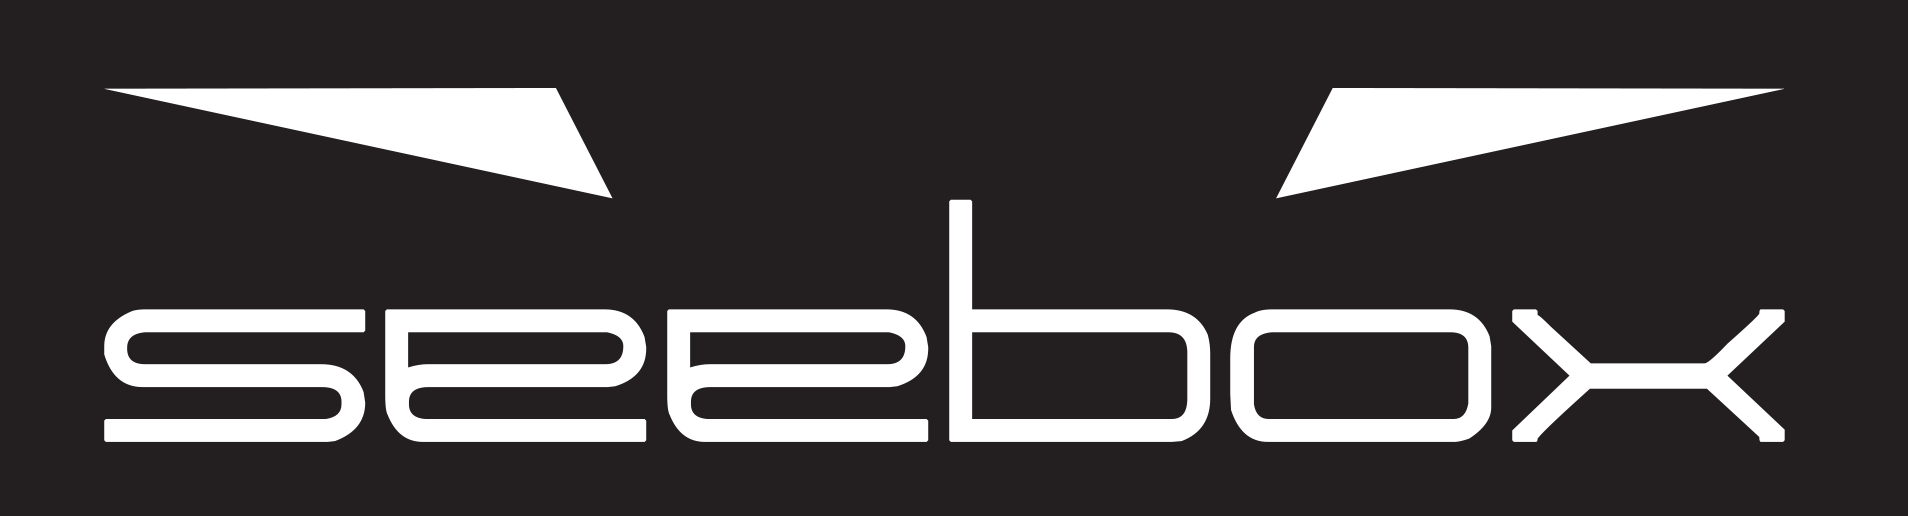 SeeBox Logo